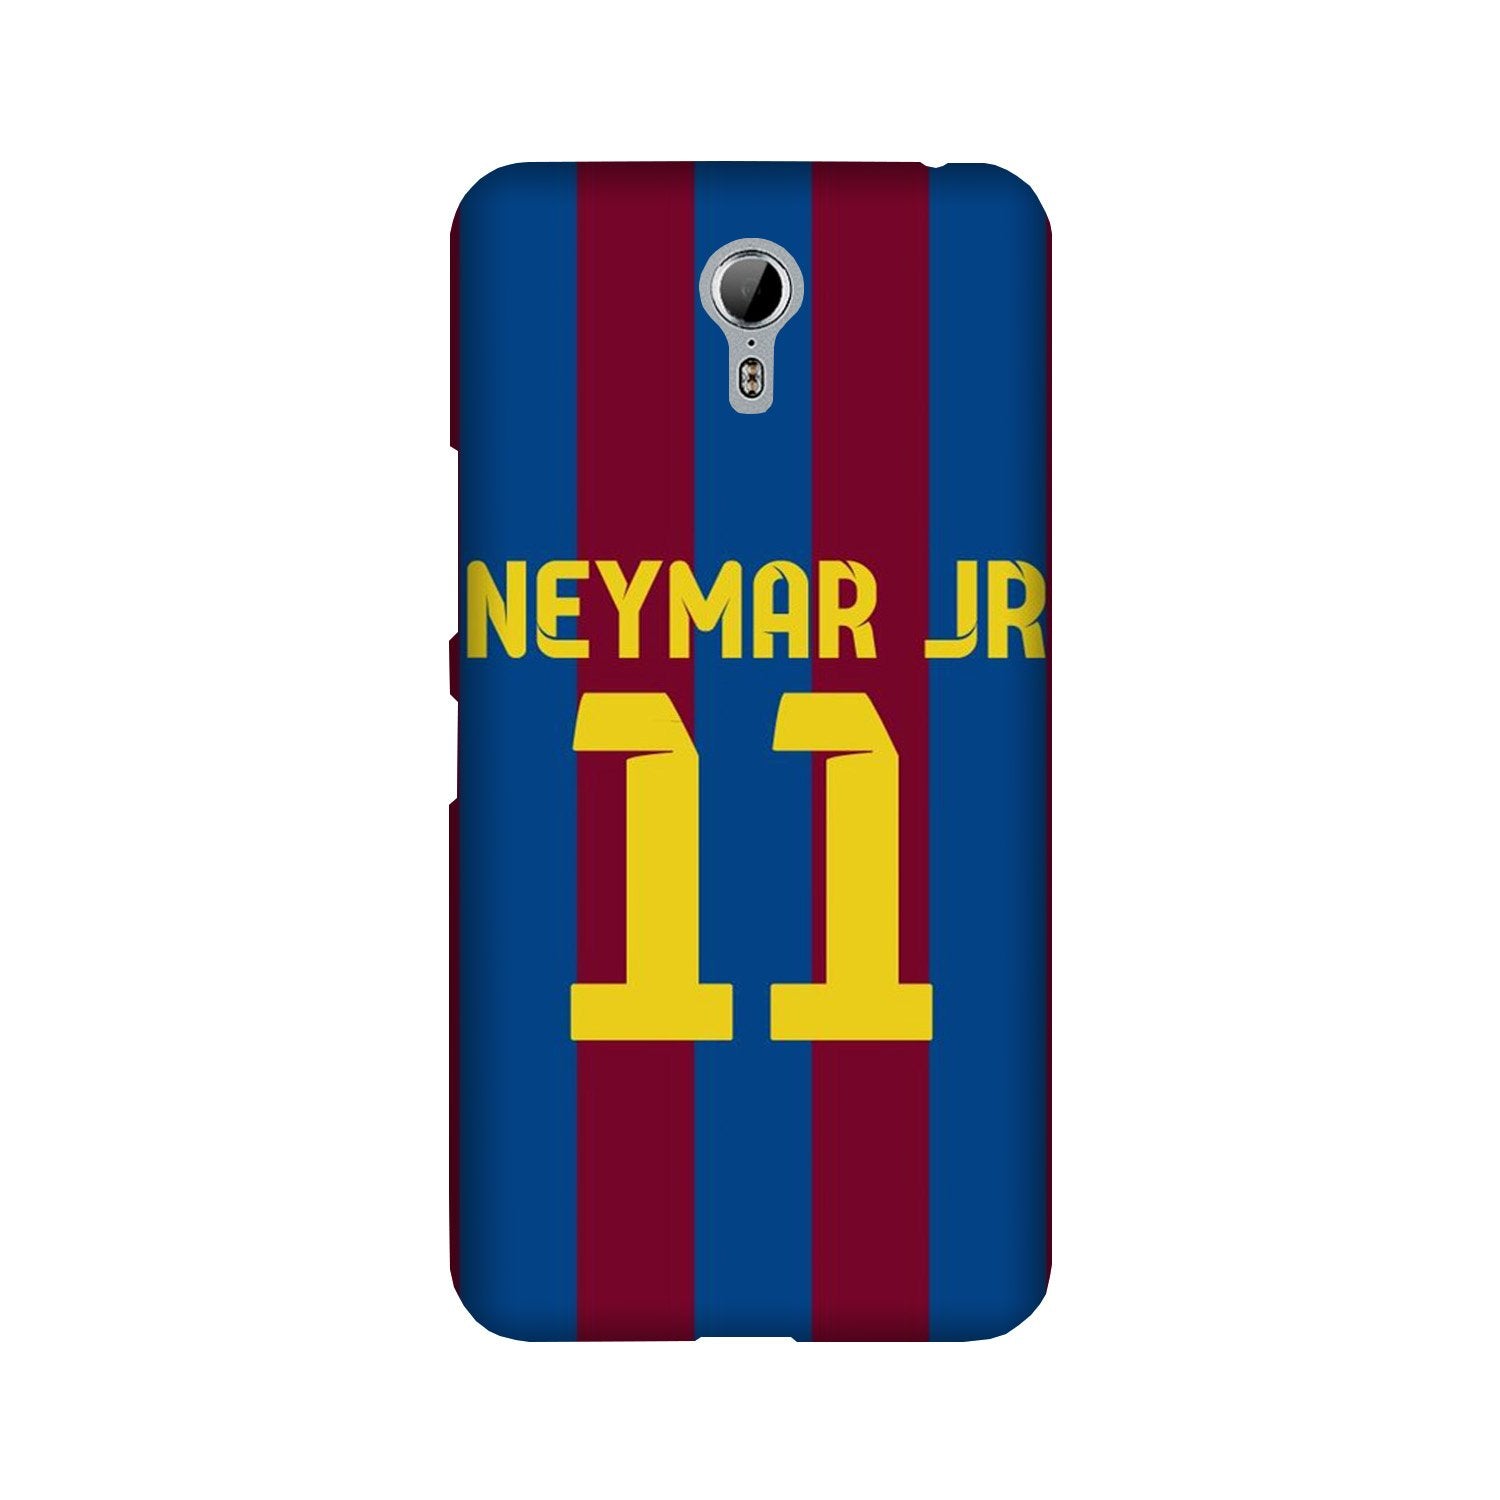 Neymar Jr Case for Lenovo Zuk Z1(Design - 162)